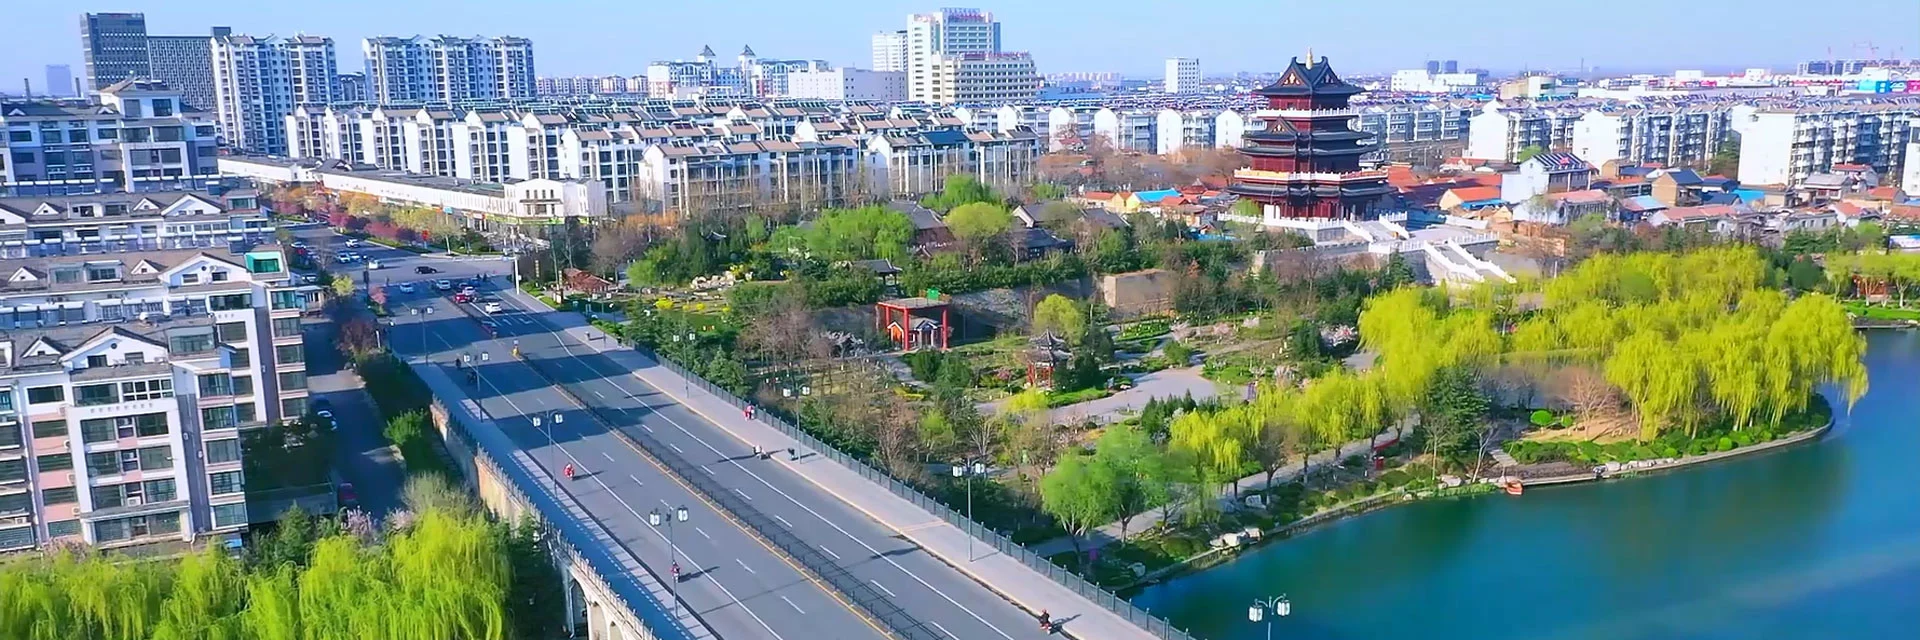 青州古城4月24日恢复开放